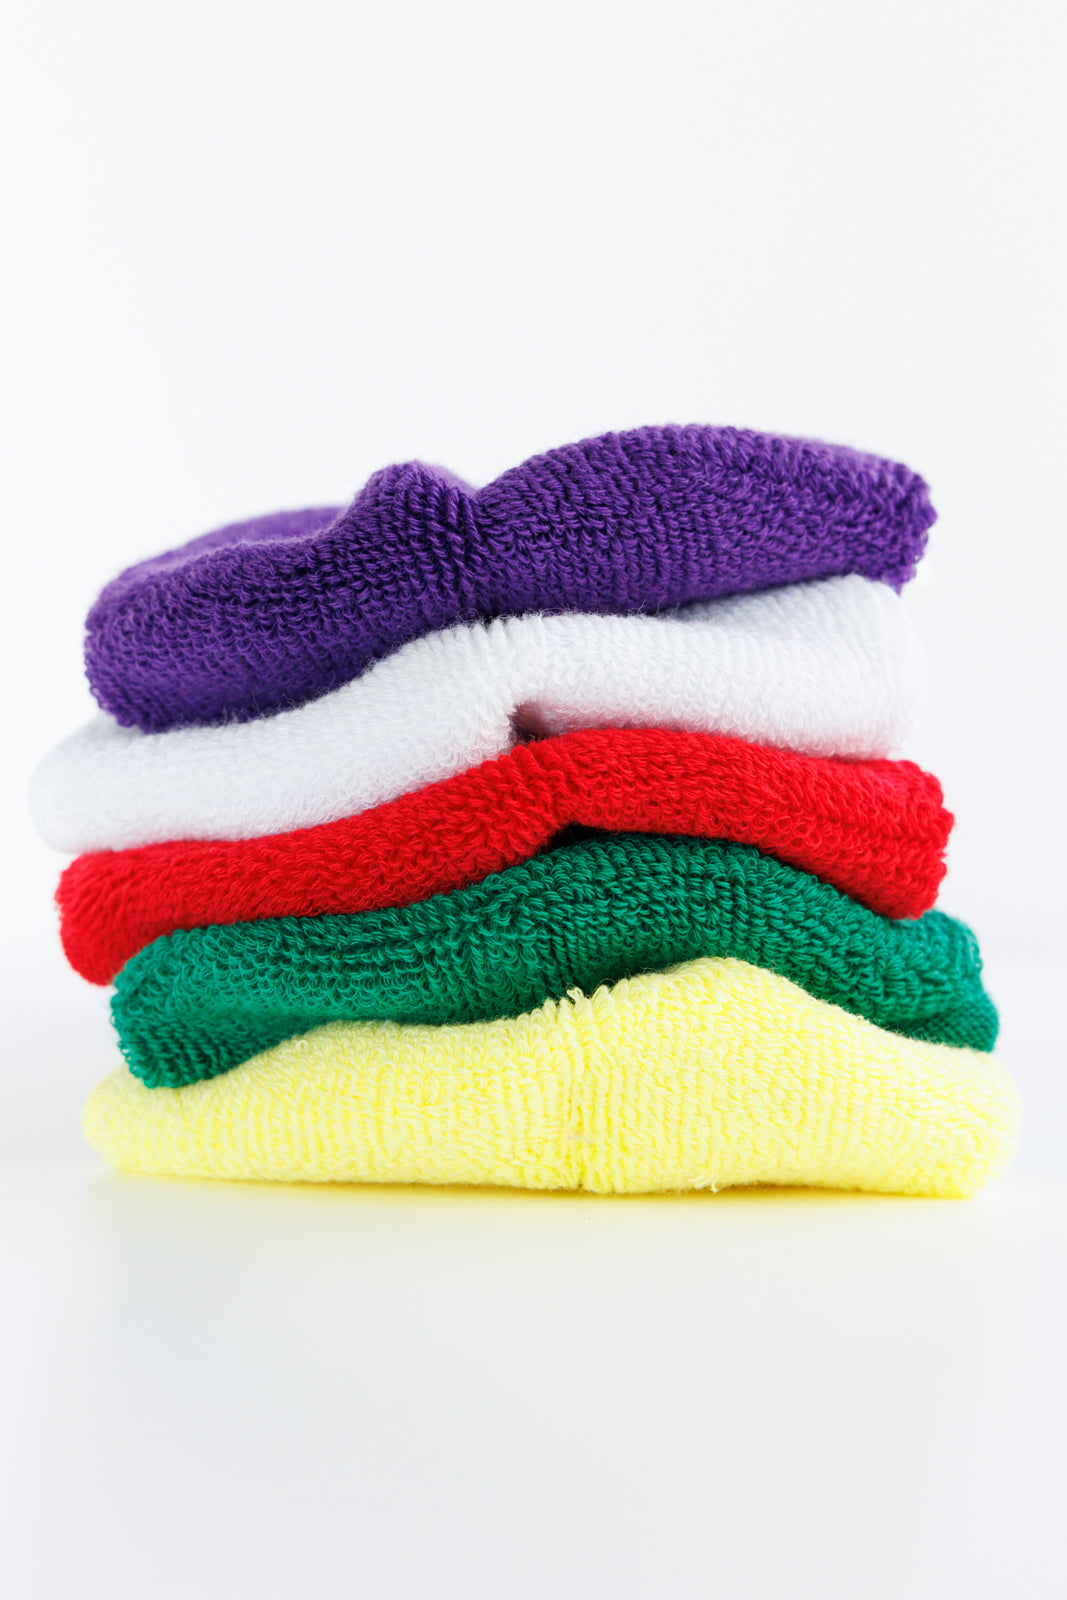 Towel like 5color socks